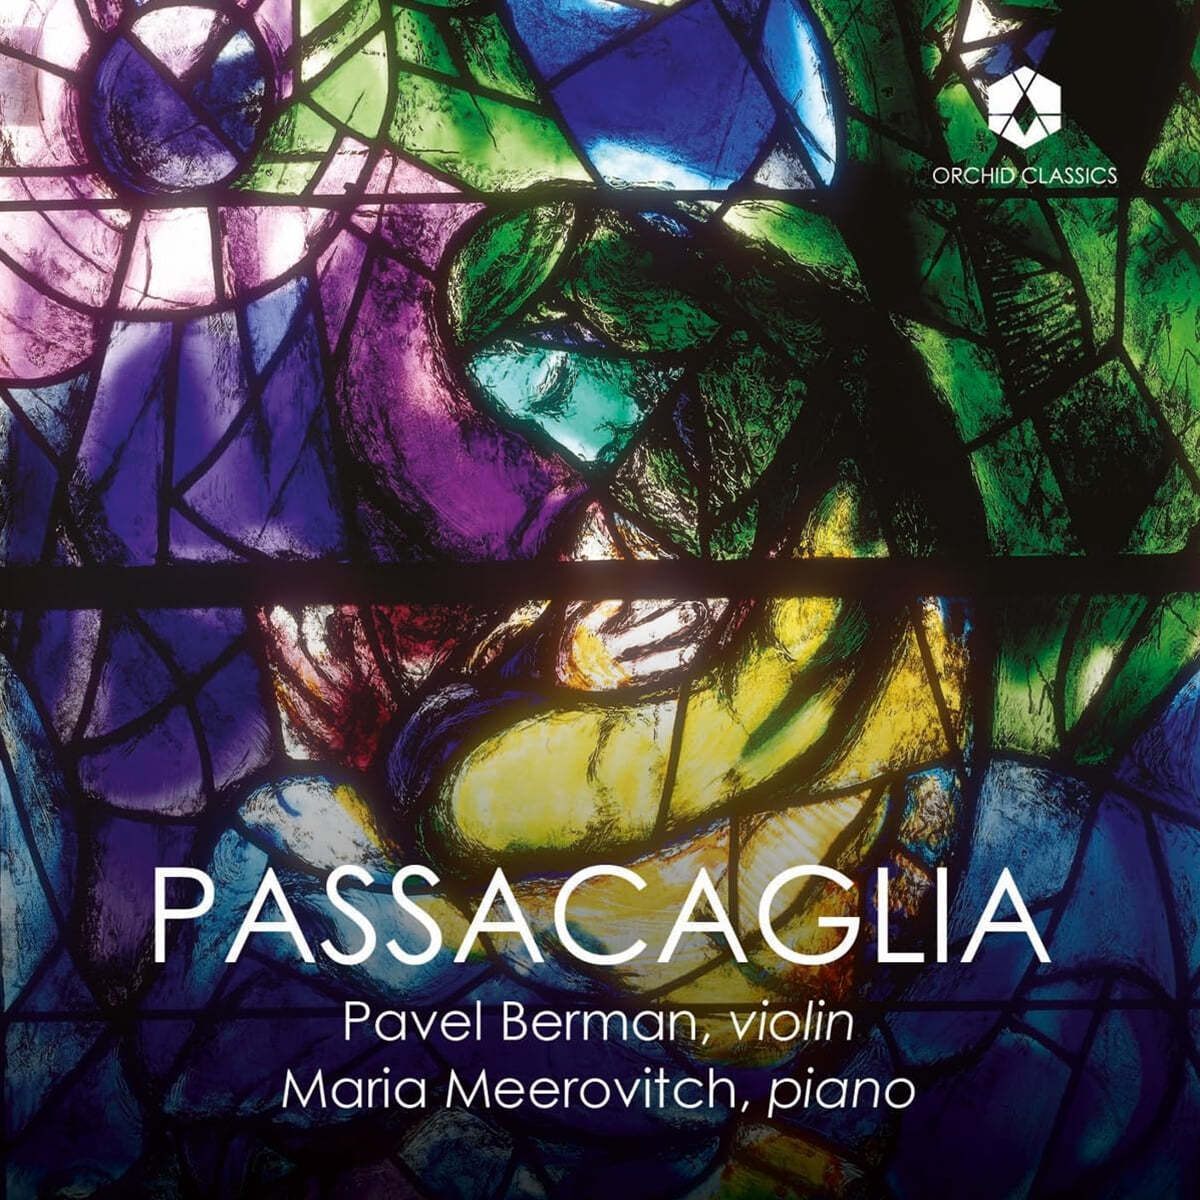 Pavel Berman / Maria Meerovitch 레스피기: 바이올린 소나타 나단조 / 쇼스타코비치: 바이올린 소나타 사장조  (Passacaglia)